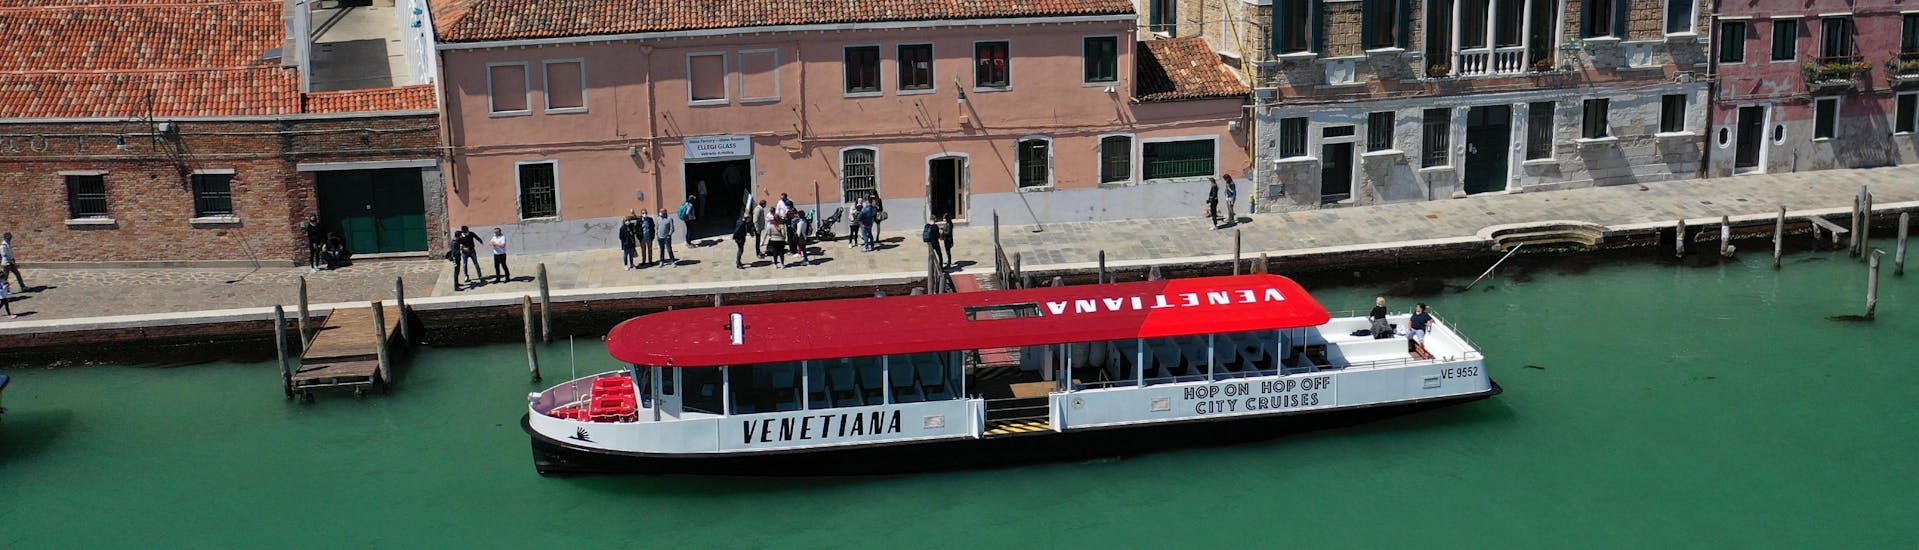 Vista su Venezia con la barca di Venetiana Boat Tours in un canale.